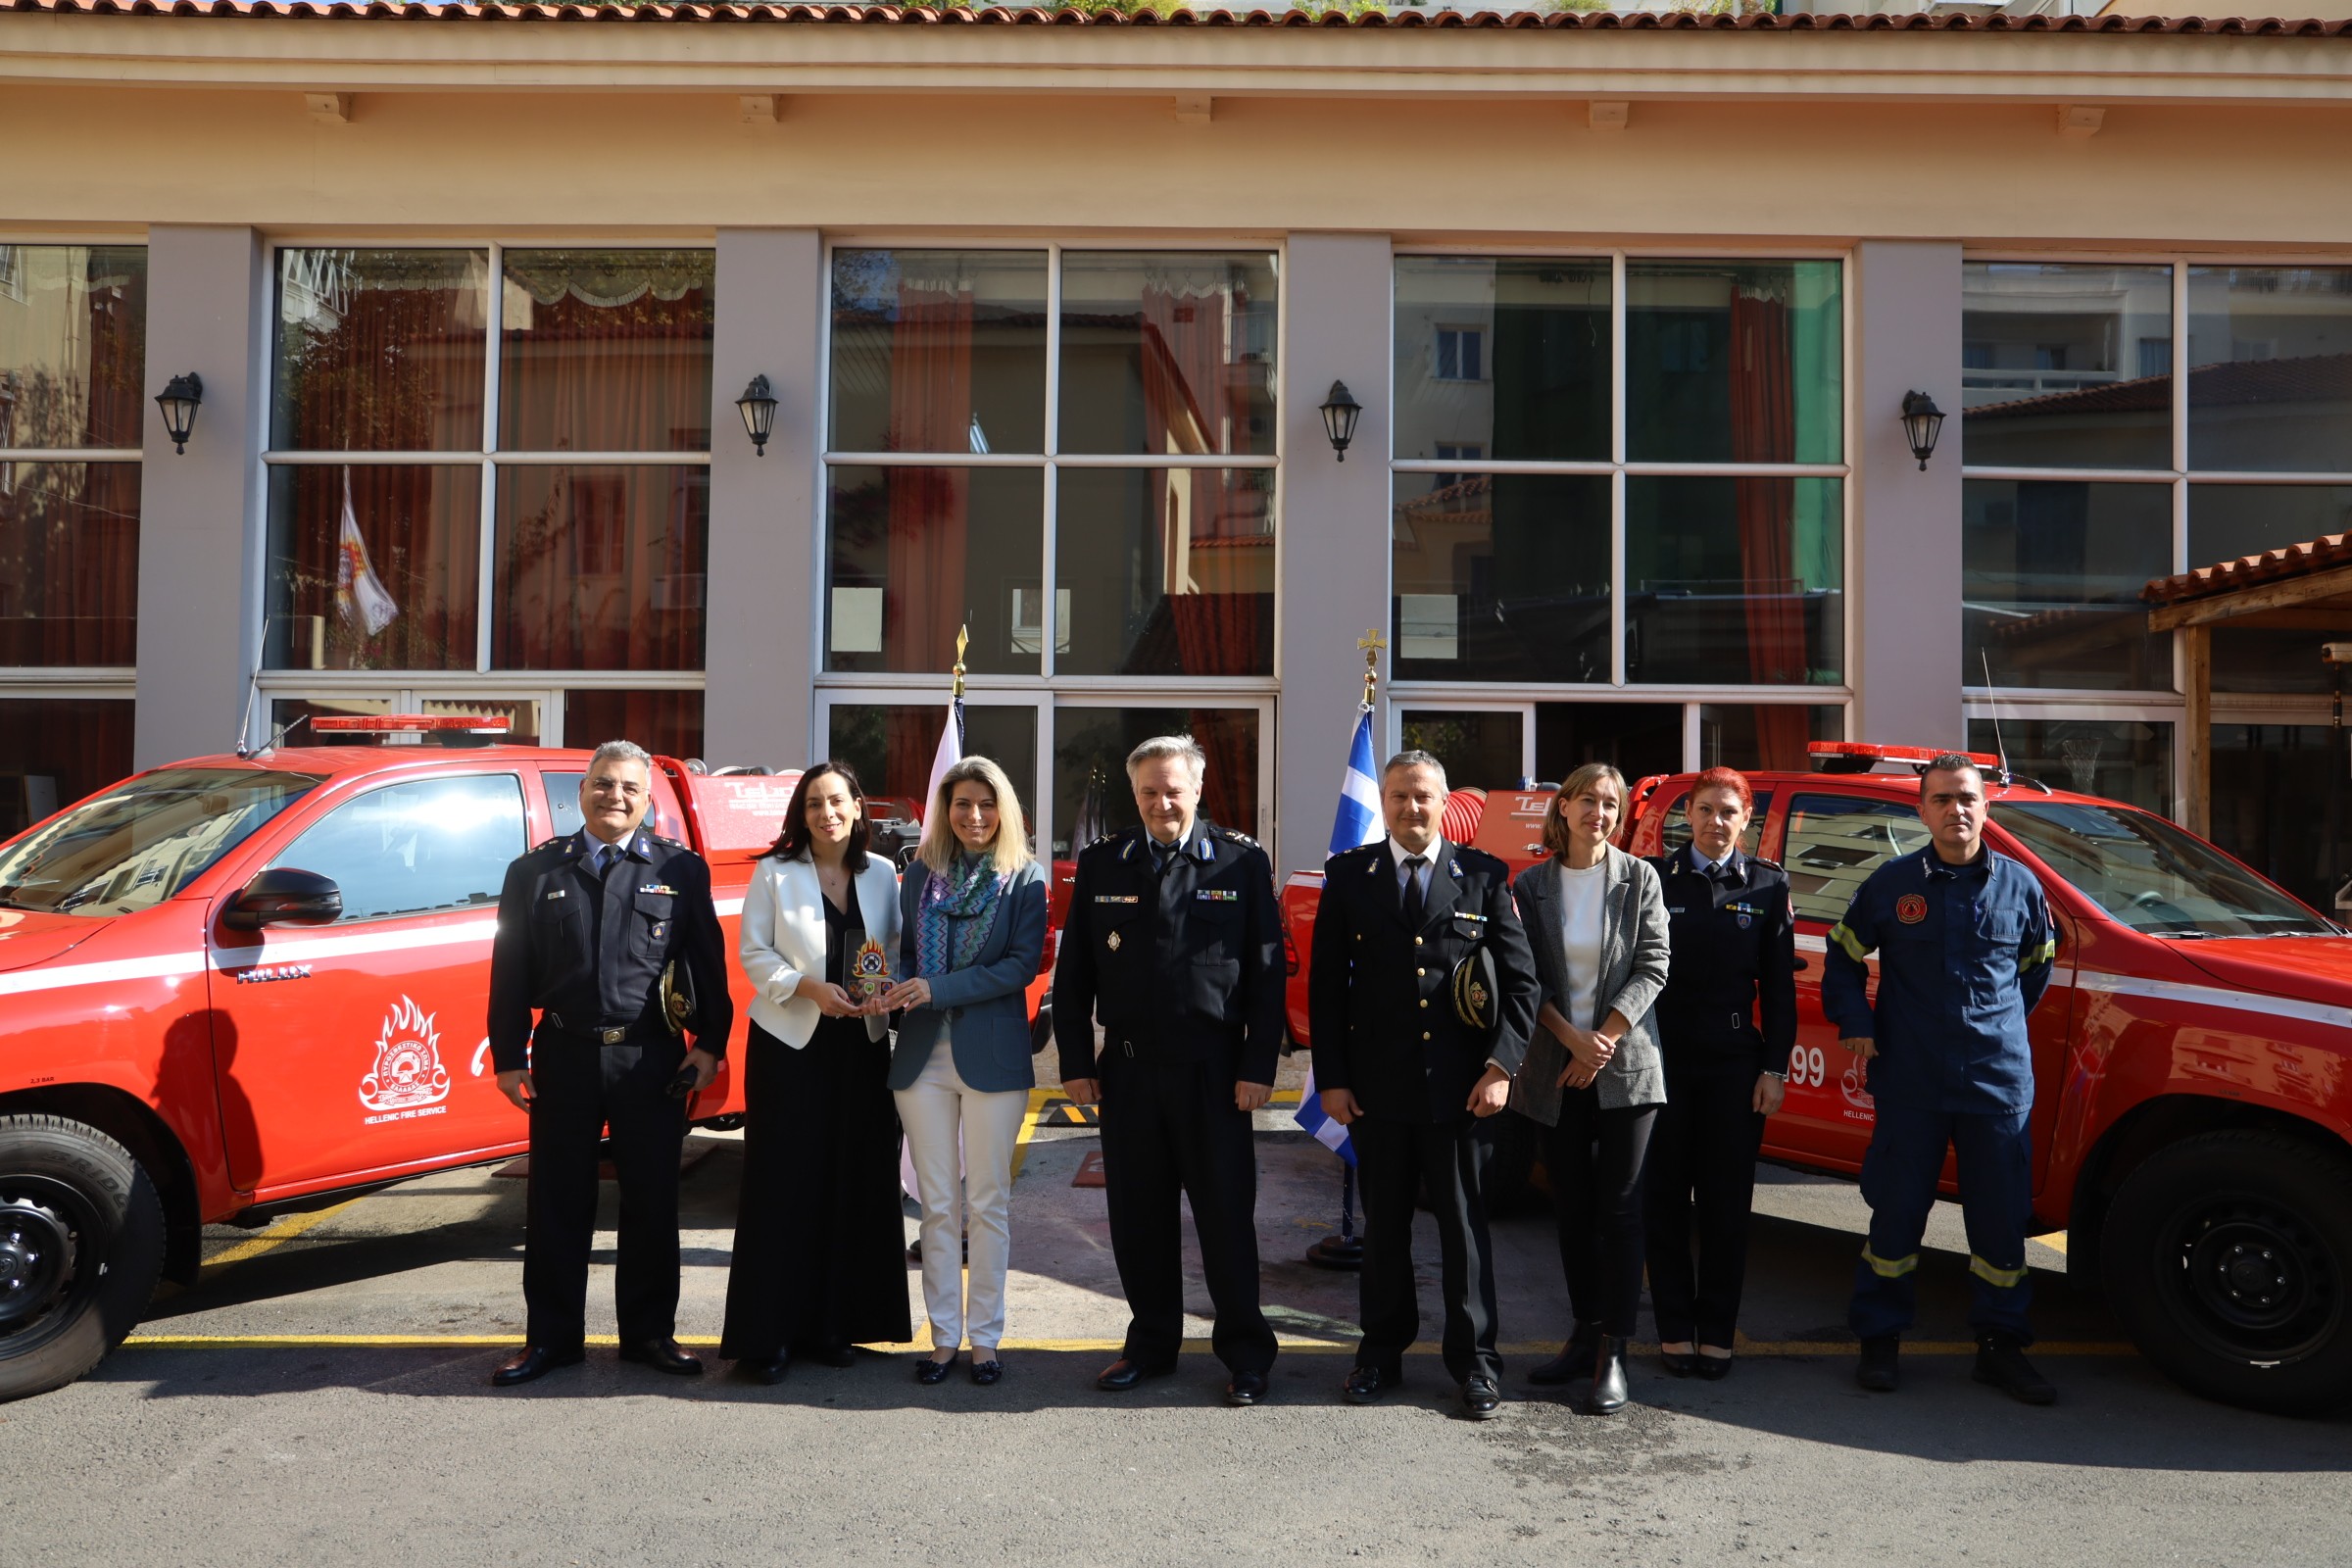 Δωρεά πυροσβεστικών οχημάτων από την Coca-Cola σε συνεργασία με το Ίδρυμα Μποδοσάκη στο Πυροσβεστικό Σώμα